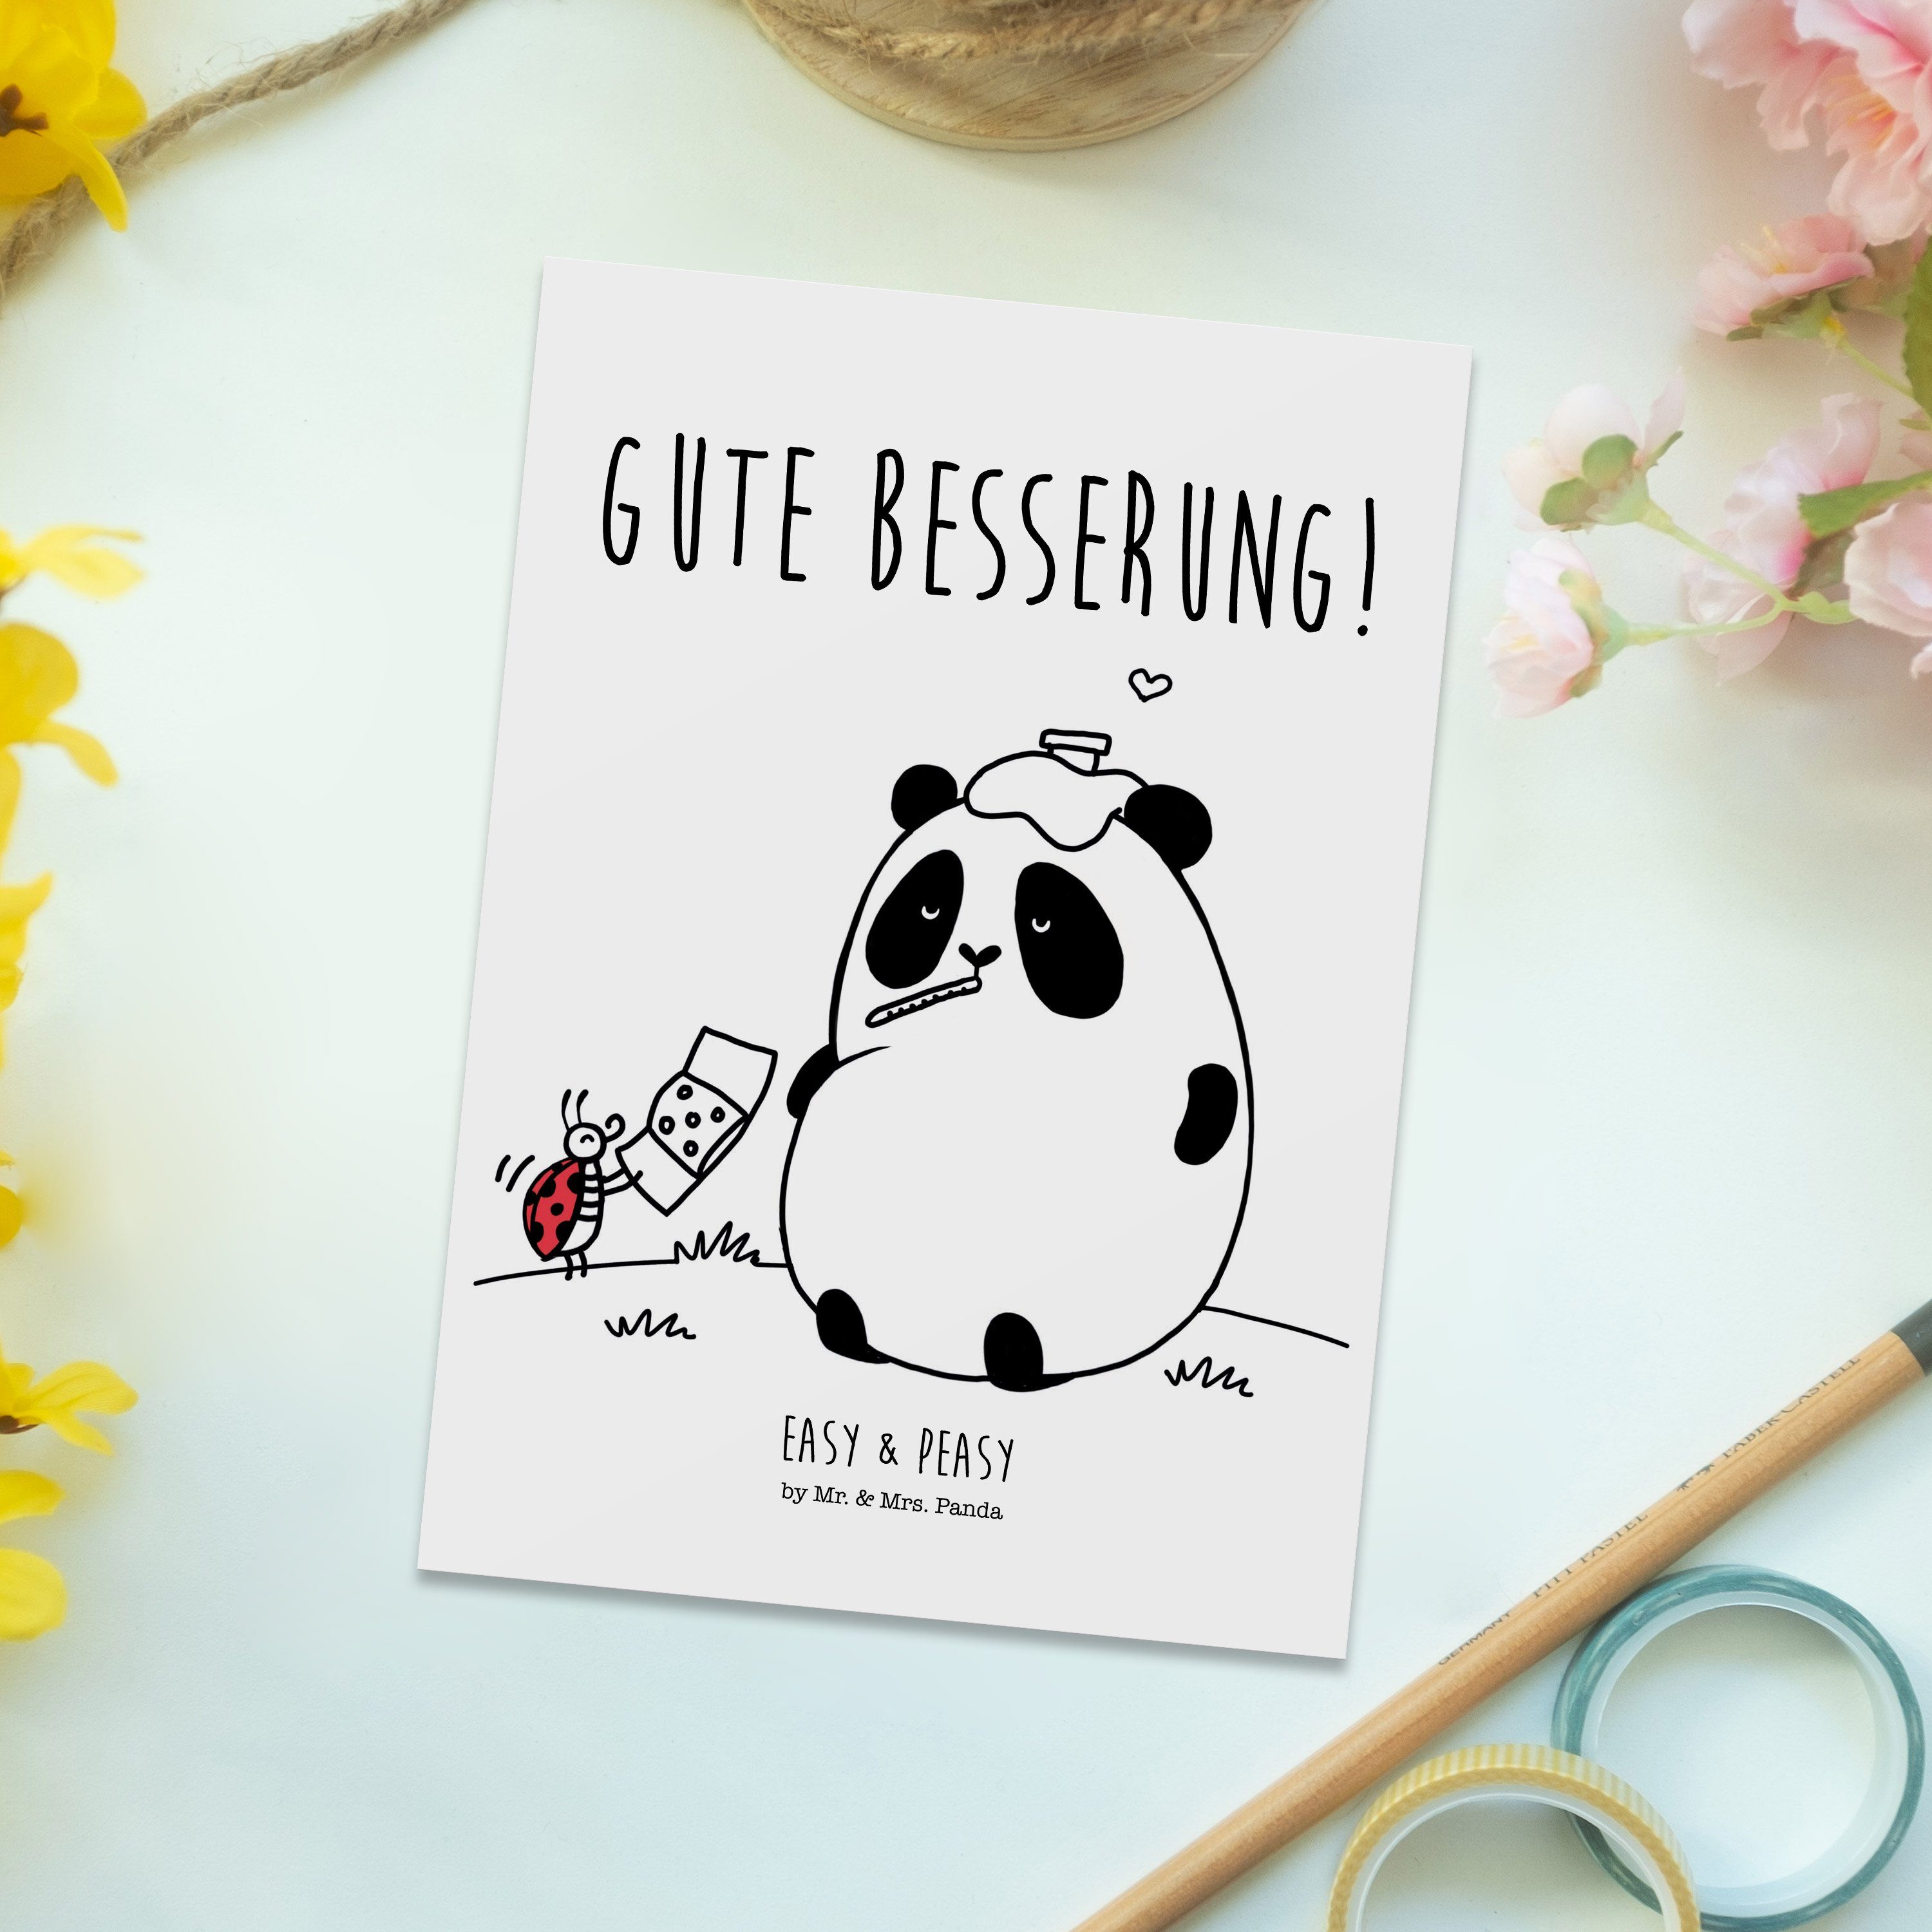 Mrs. - Easy Geschenk, Peasy Panda Einladung, Besserung Postkarte Weiß - Mr. & Gute & Grußkarte